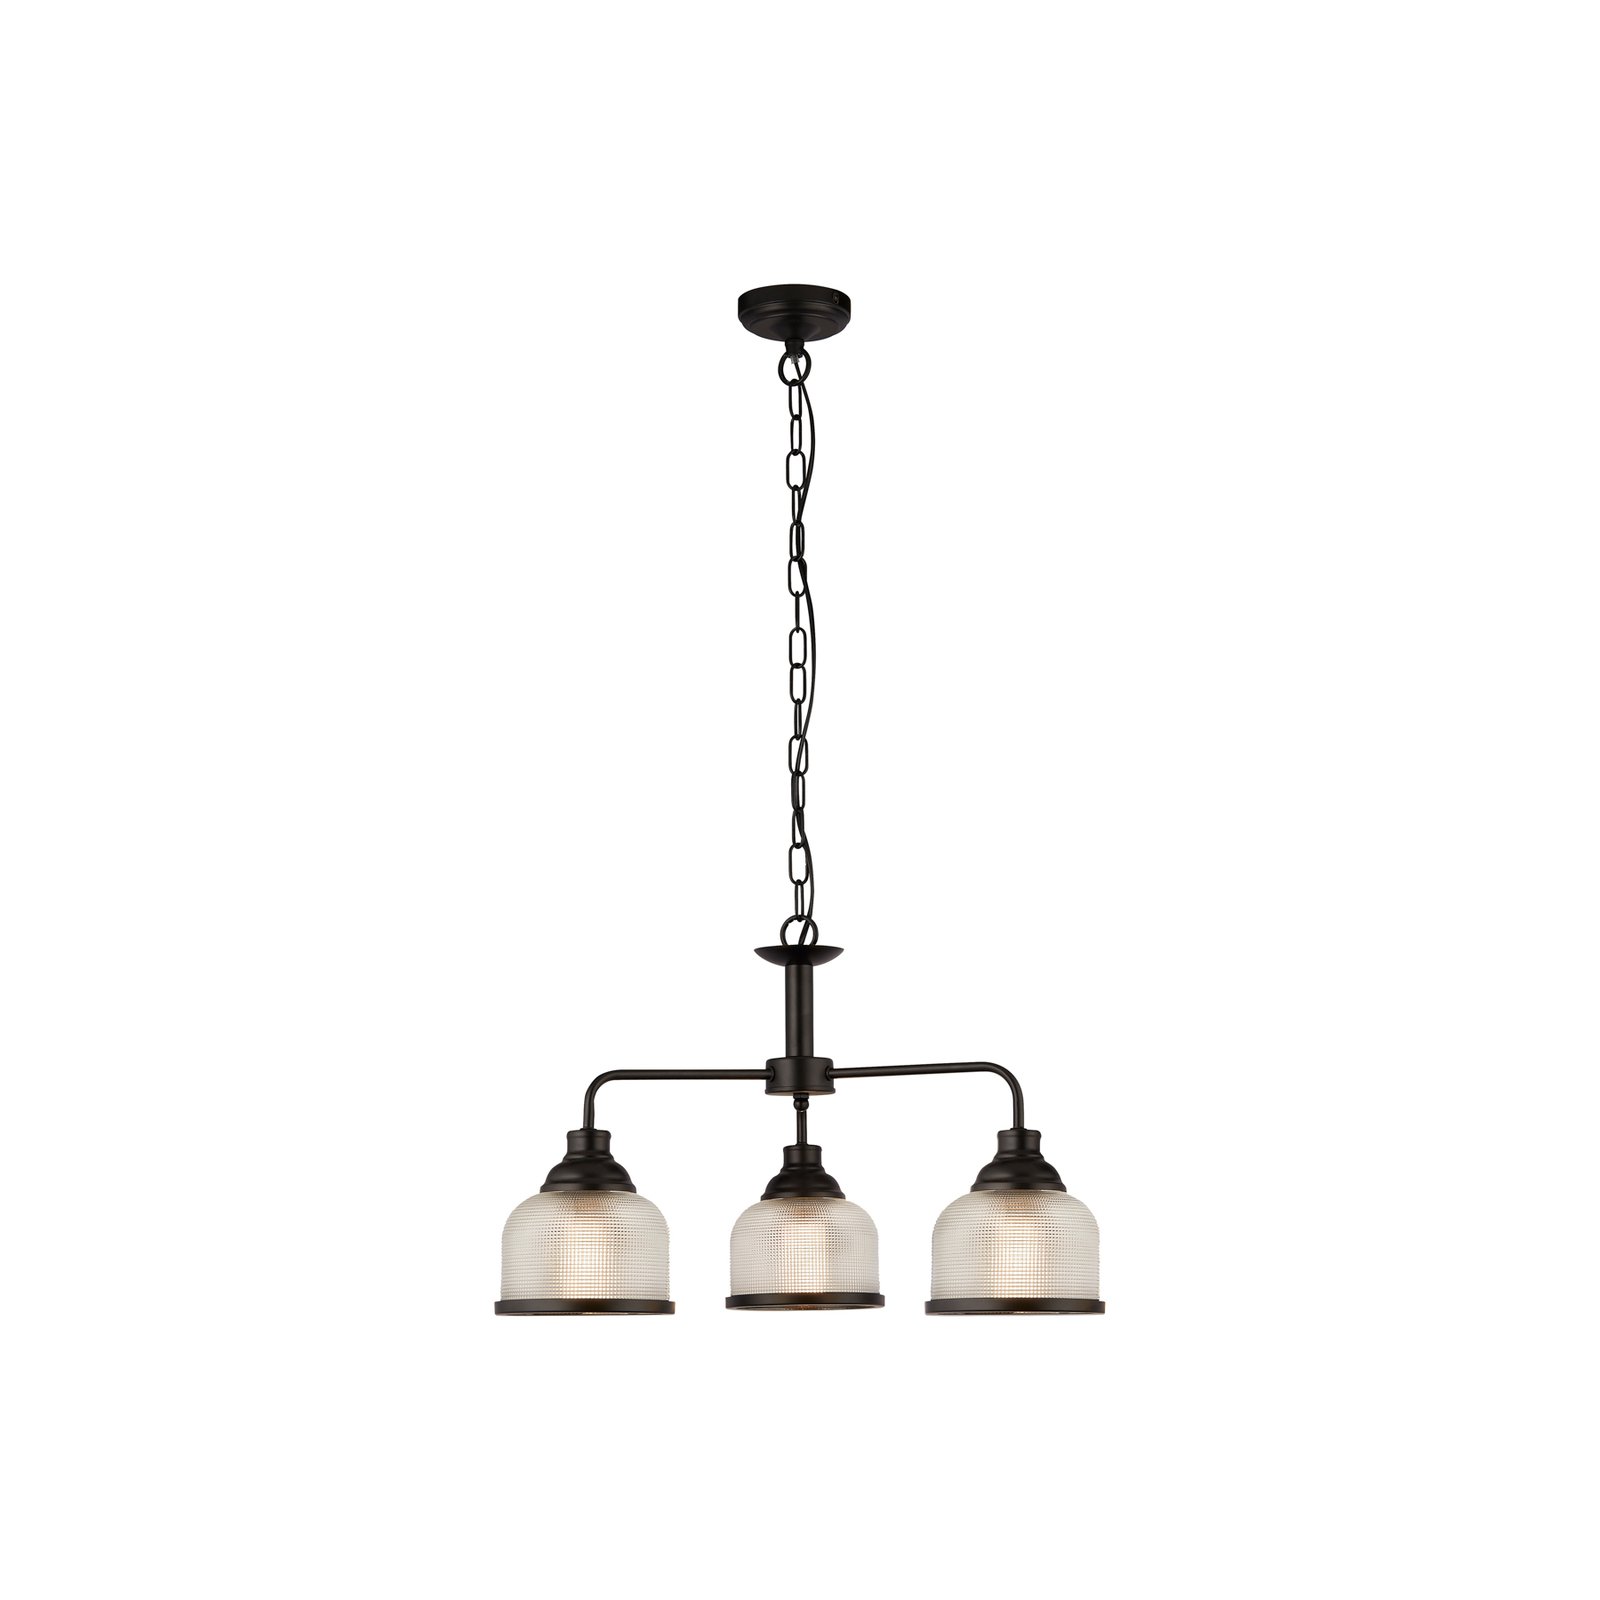 Highworth hanglamp, 3-lamps, decentraal